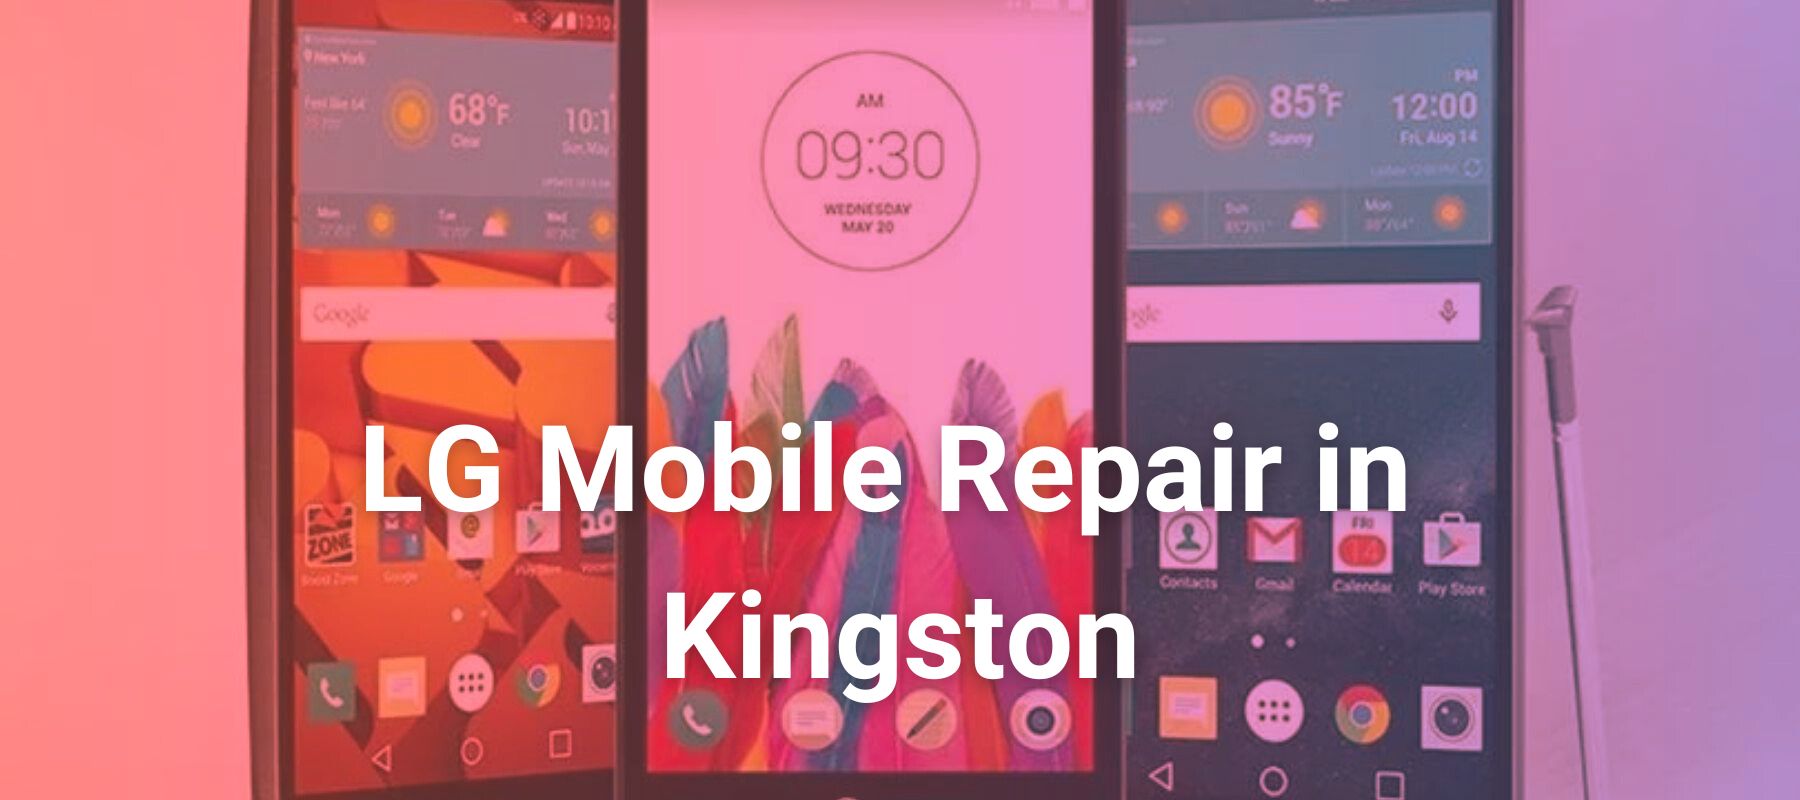 LG Mobile Repair in Kingston